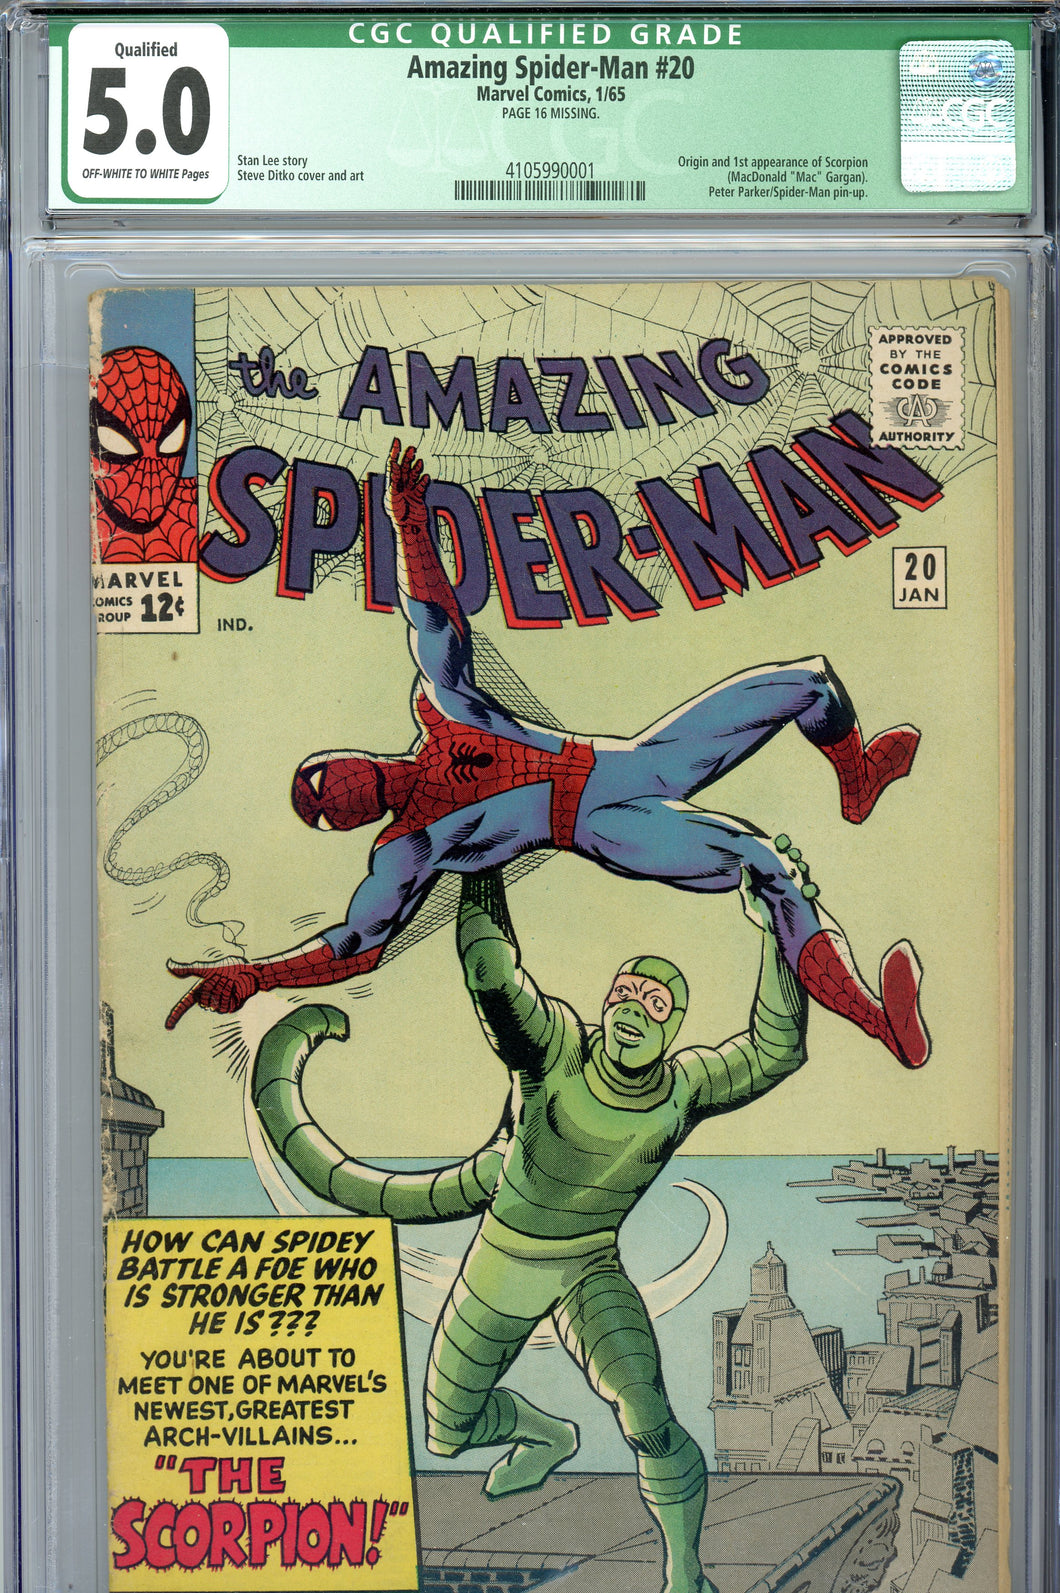 Amazing Spider-Man #20 CGC 5.0 (Q) missing poster